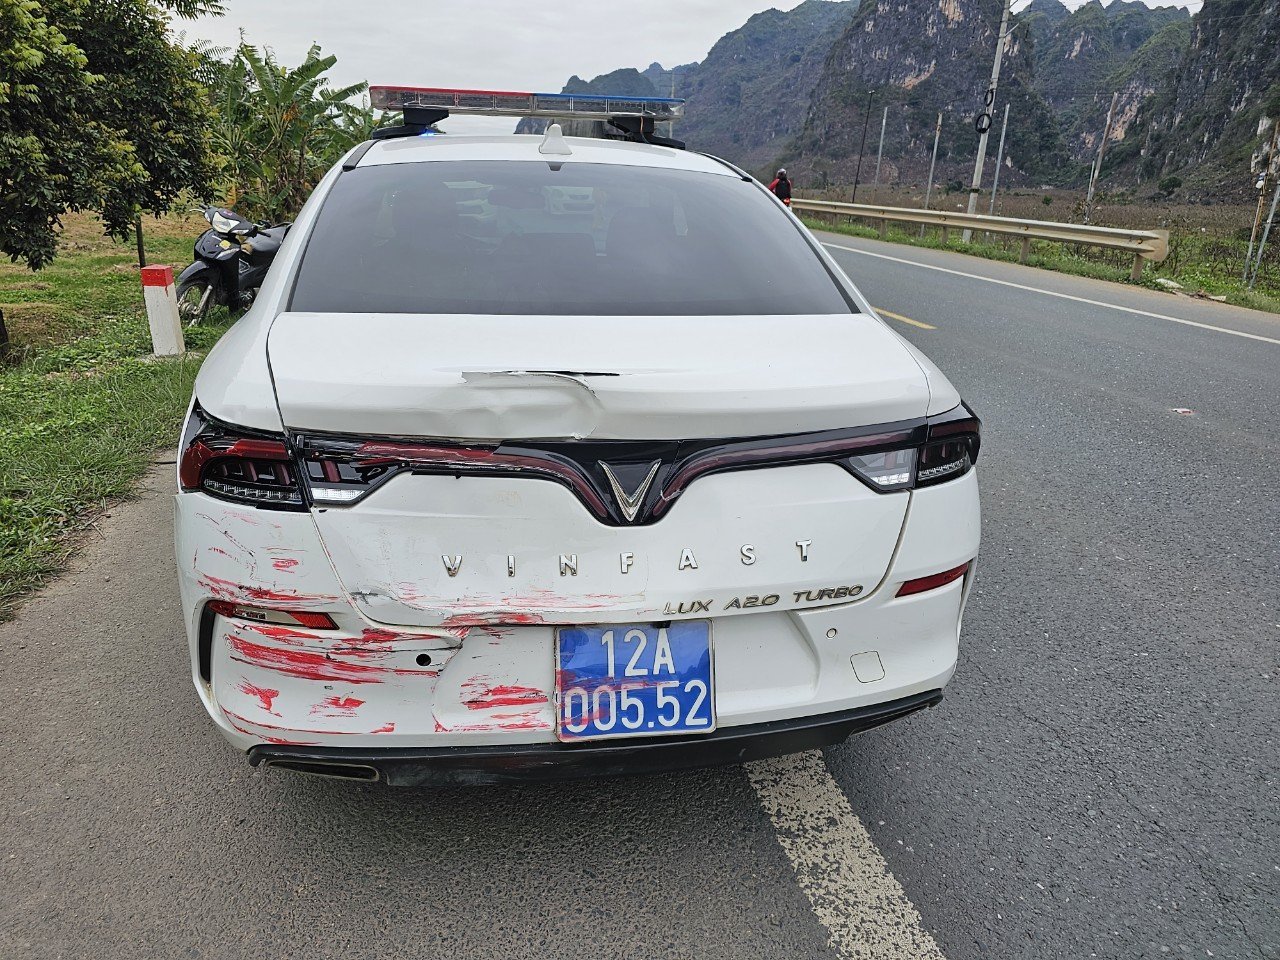 Ôtô khách tông nhiều lần vào xe cảnh sát giao thông